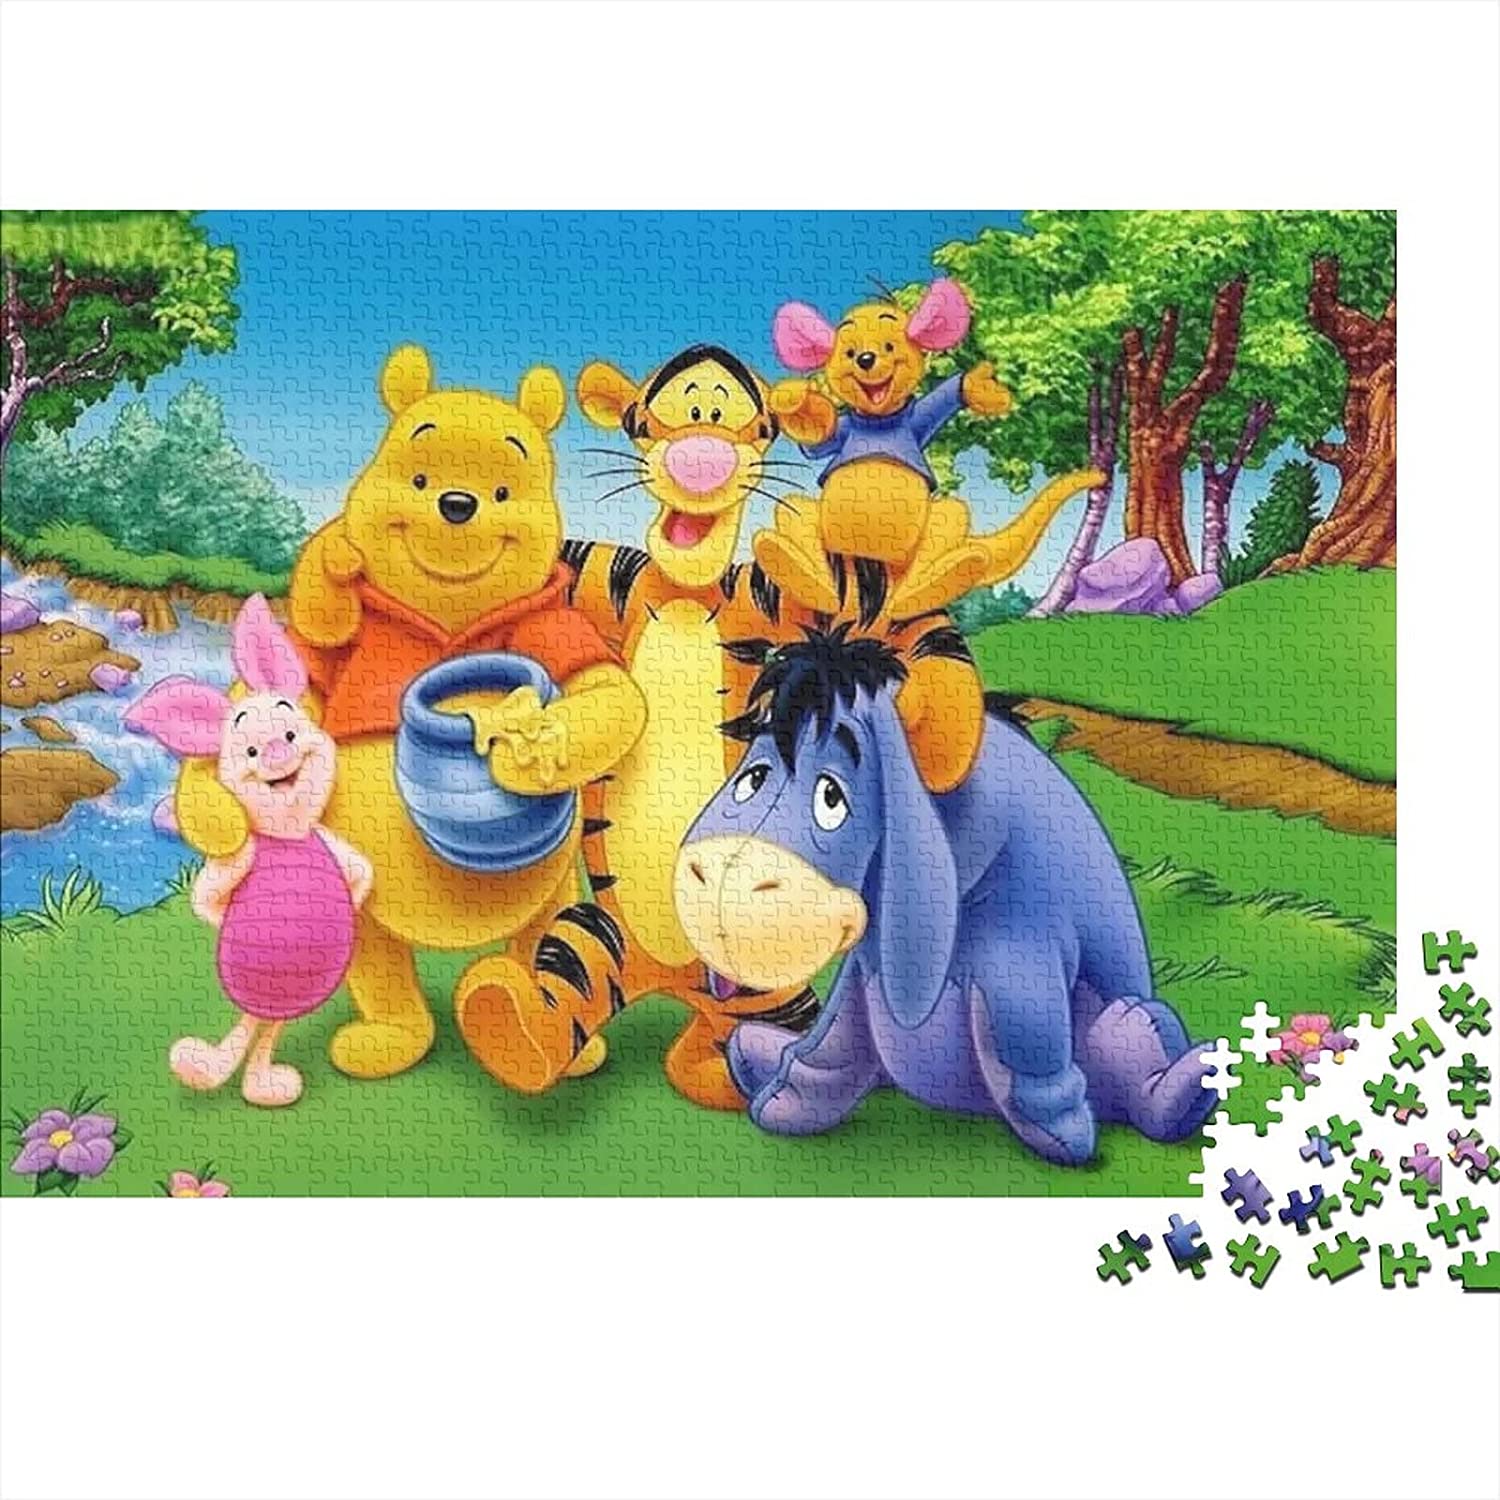 Puzzle de Winnie de Pooh, Piglet, Tigger y Eeyone 300pc